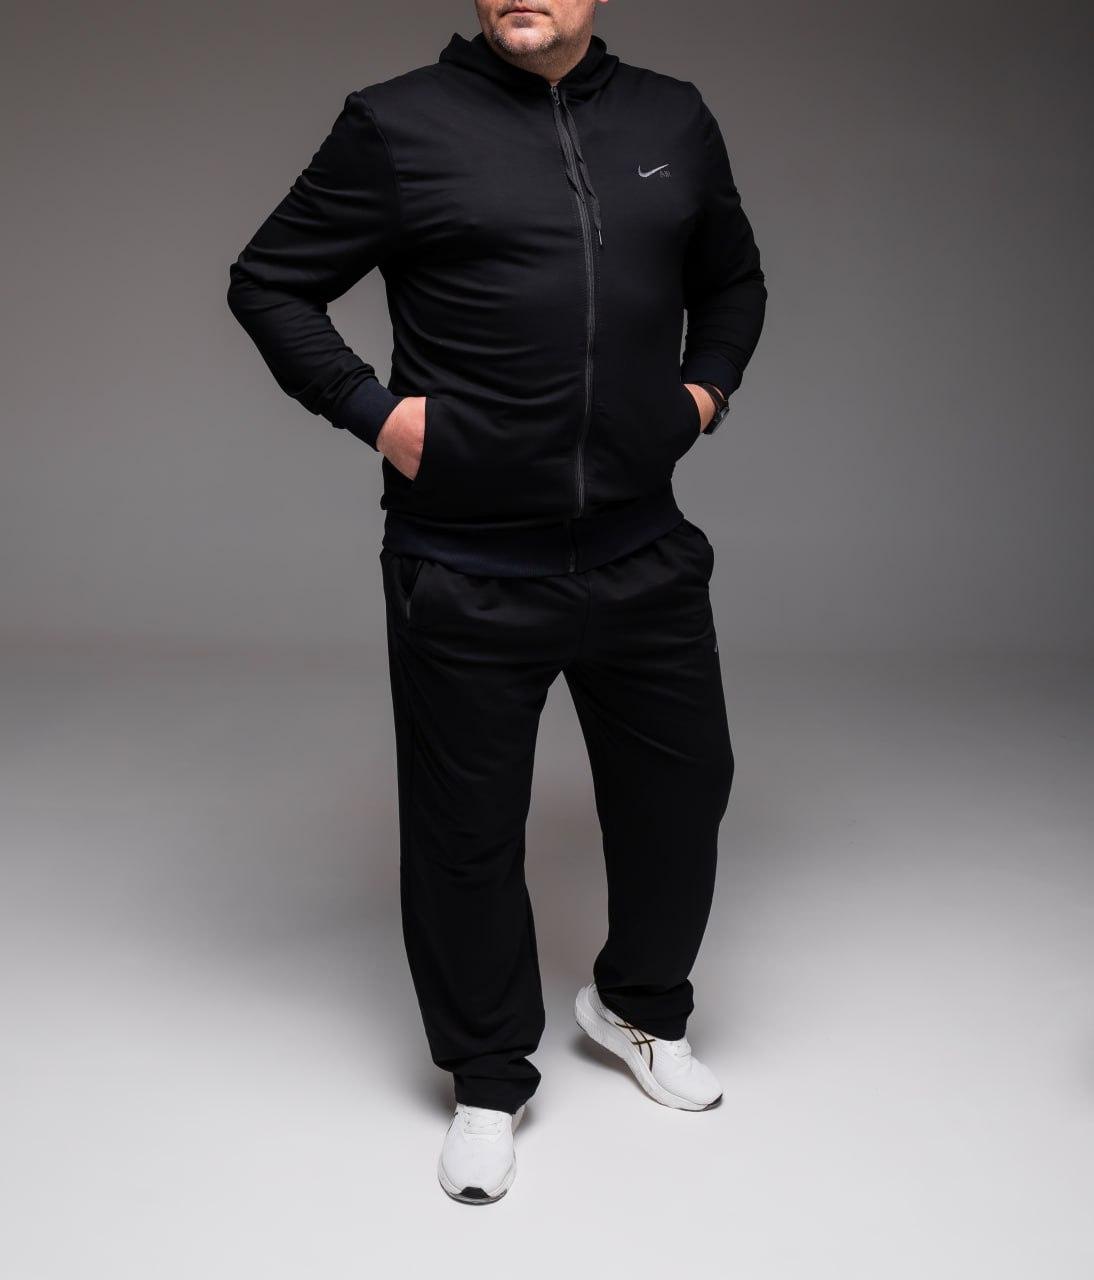 Чоловічий спортивний костюм батал Nike весняний осінній батальний комплект великого розміру Найк